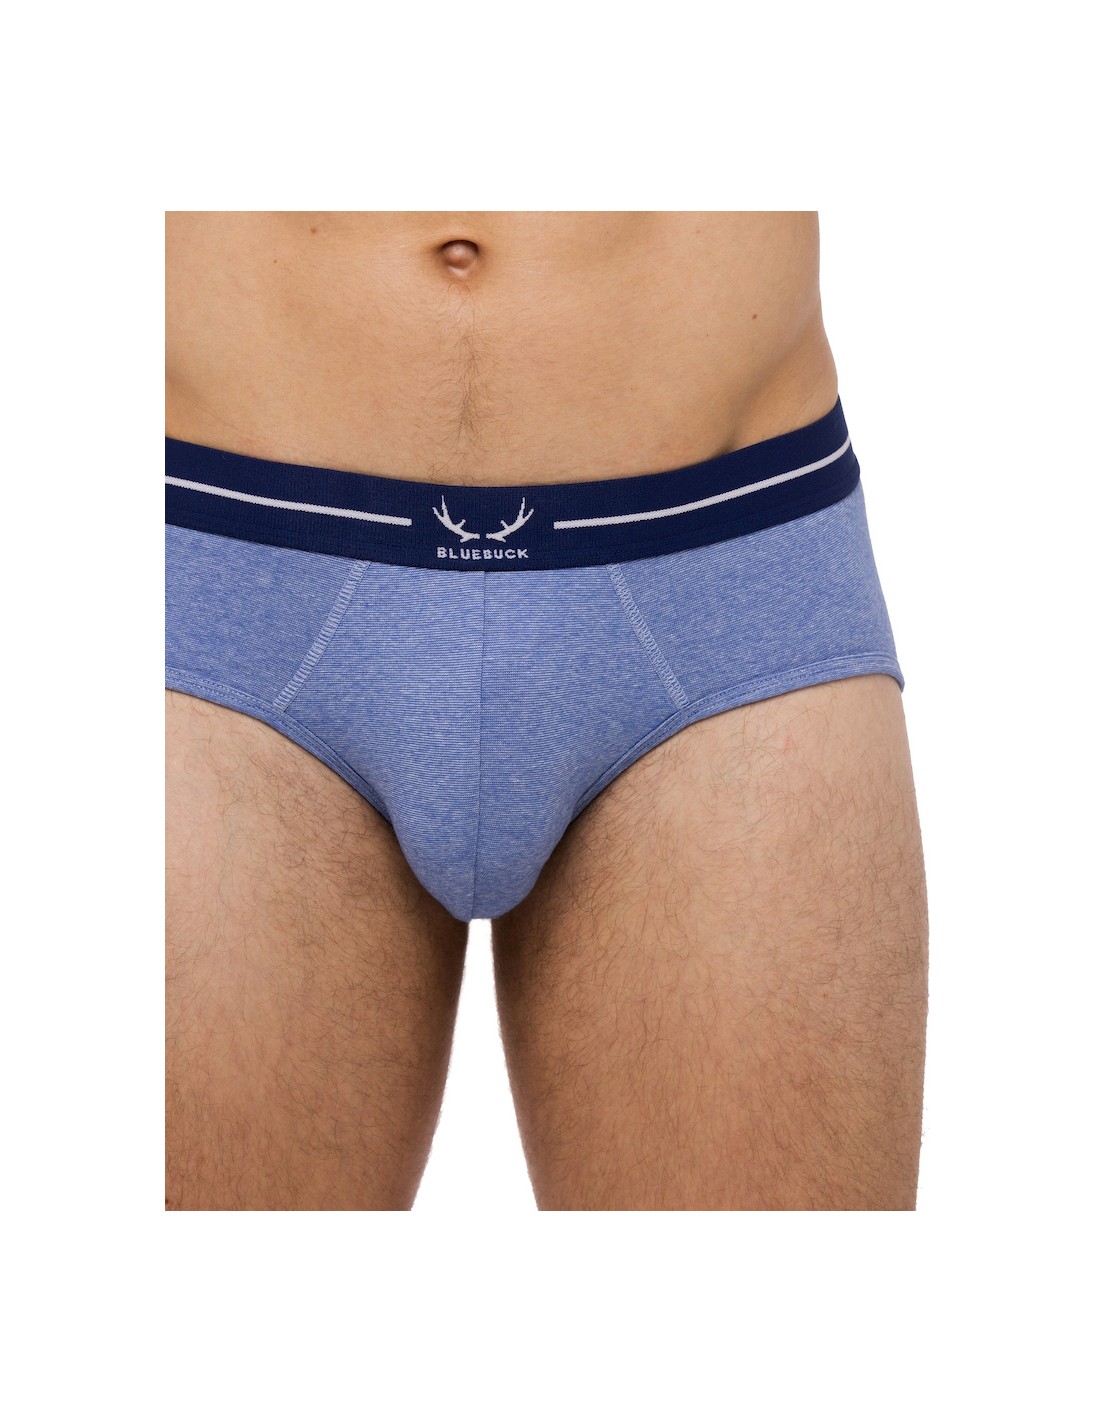 Underwear review: Bluebuck Nautical Brief